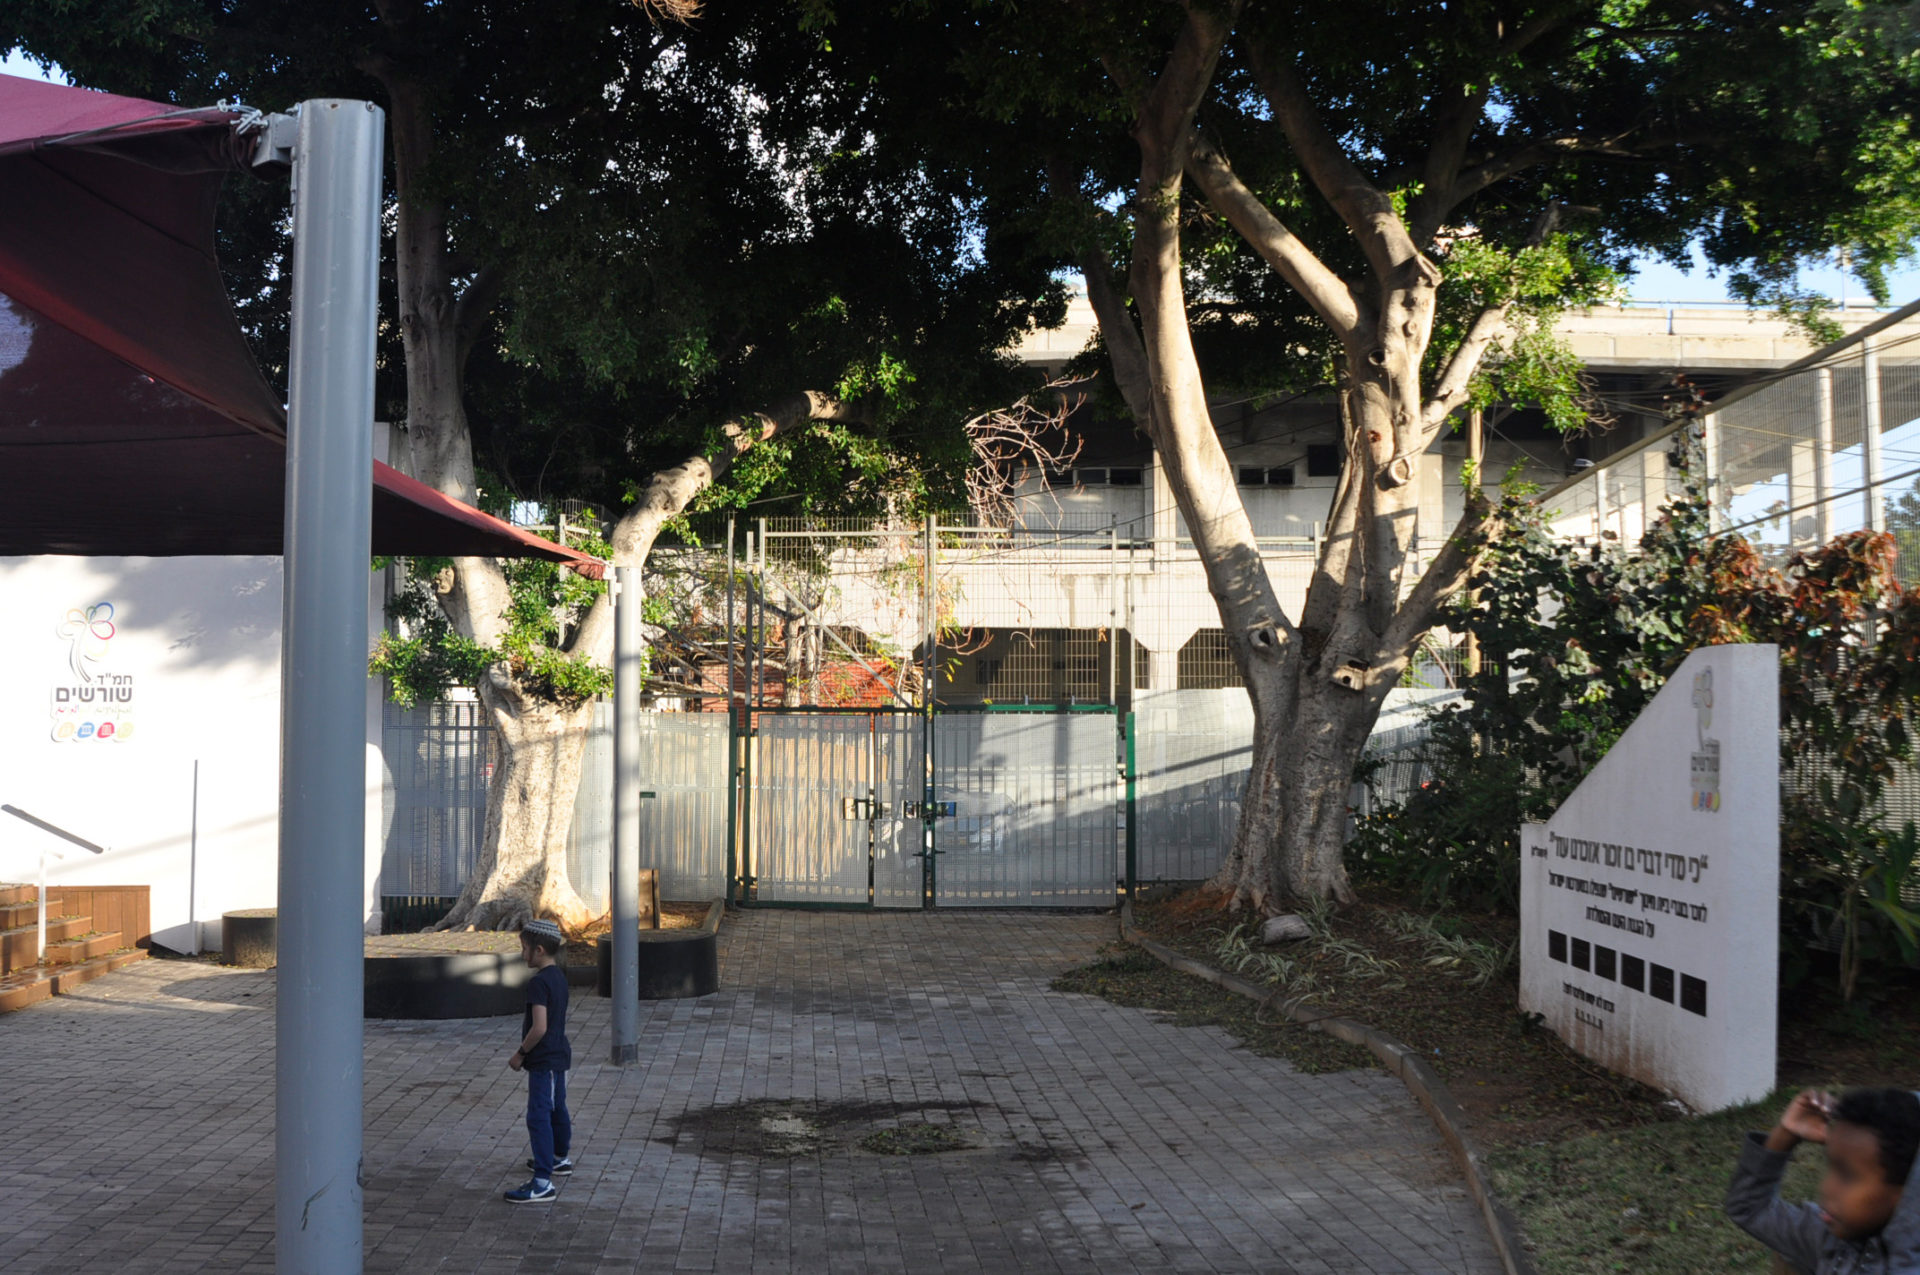 החצר המשותפת לבתי הספר "השכונתי שפירא" ו"שורשים" על רקע התחנה המרכזית הצמודה אליה. צילום: יעל געתון